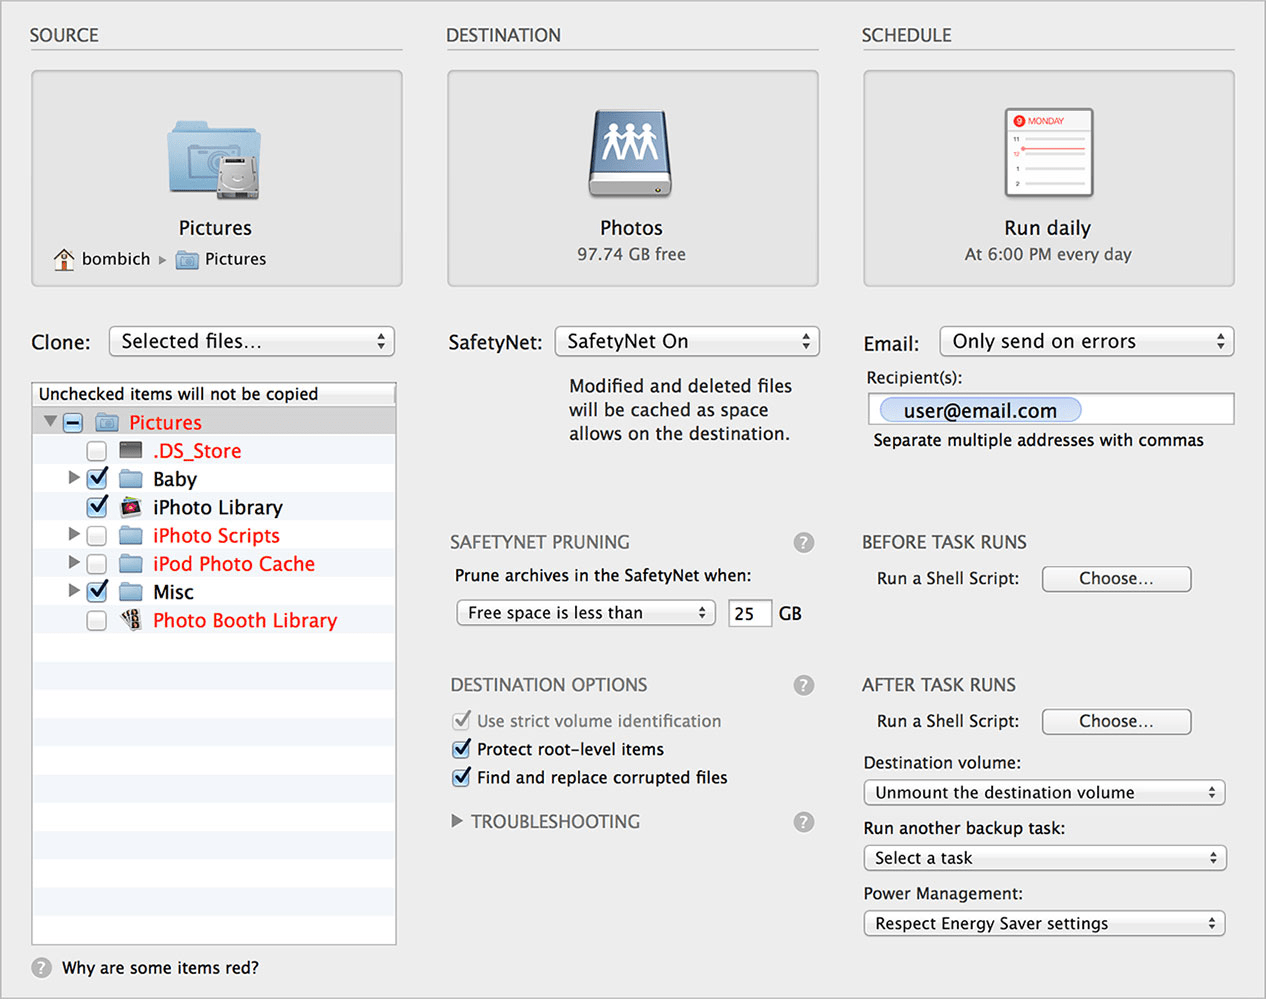 carbon copy cloner mac full